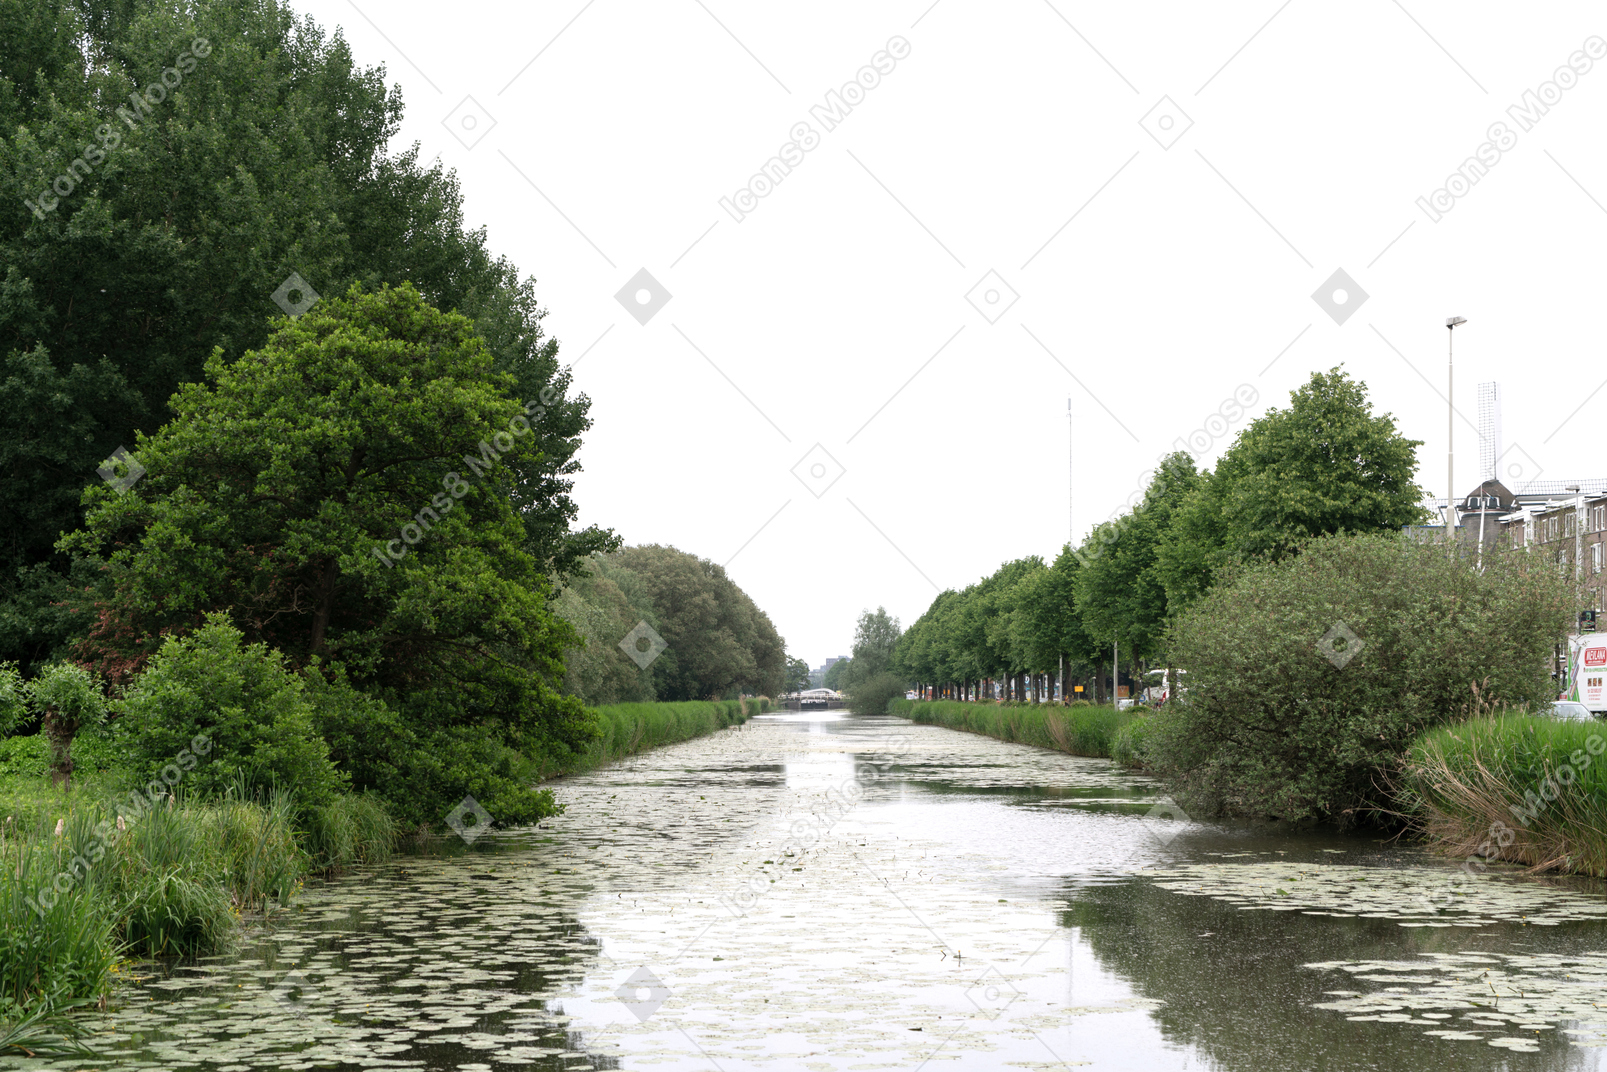 Uma vista de um rio com árvores em ambos os lados